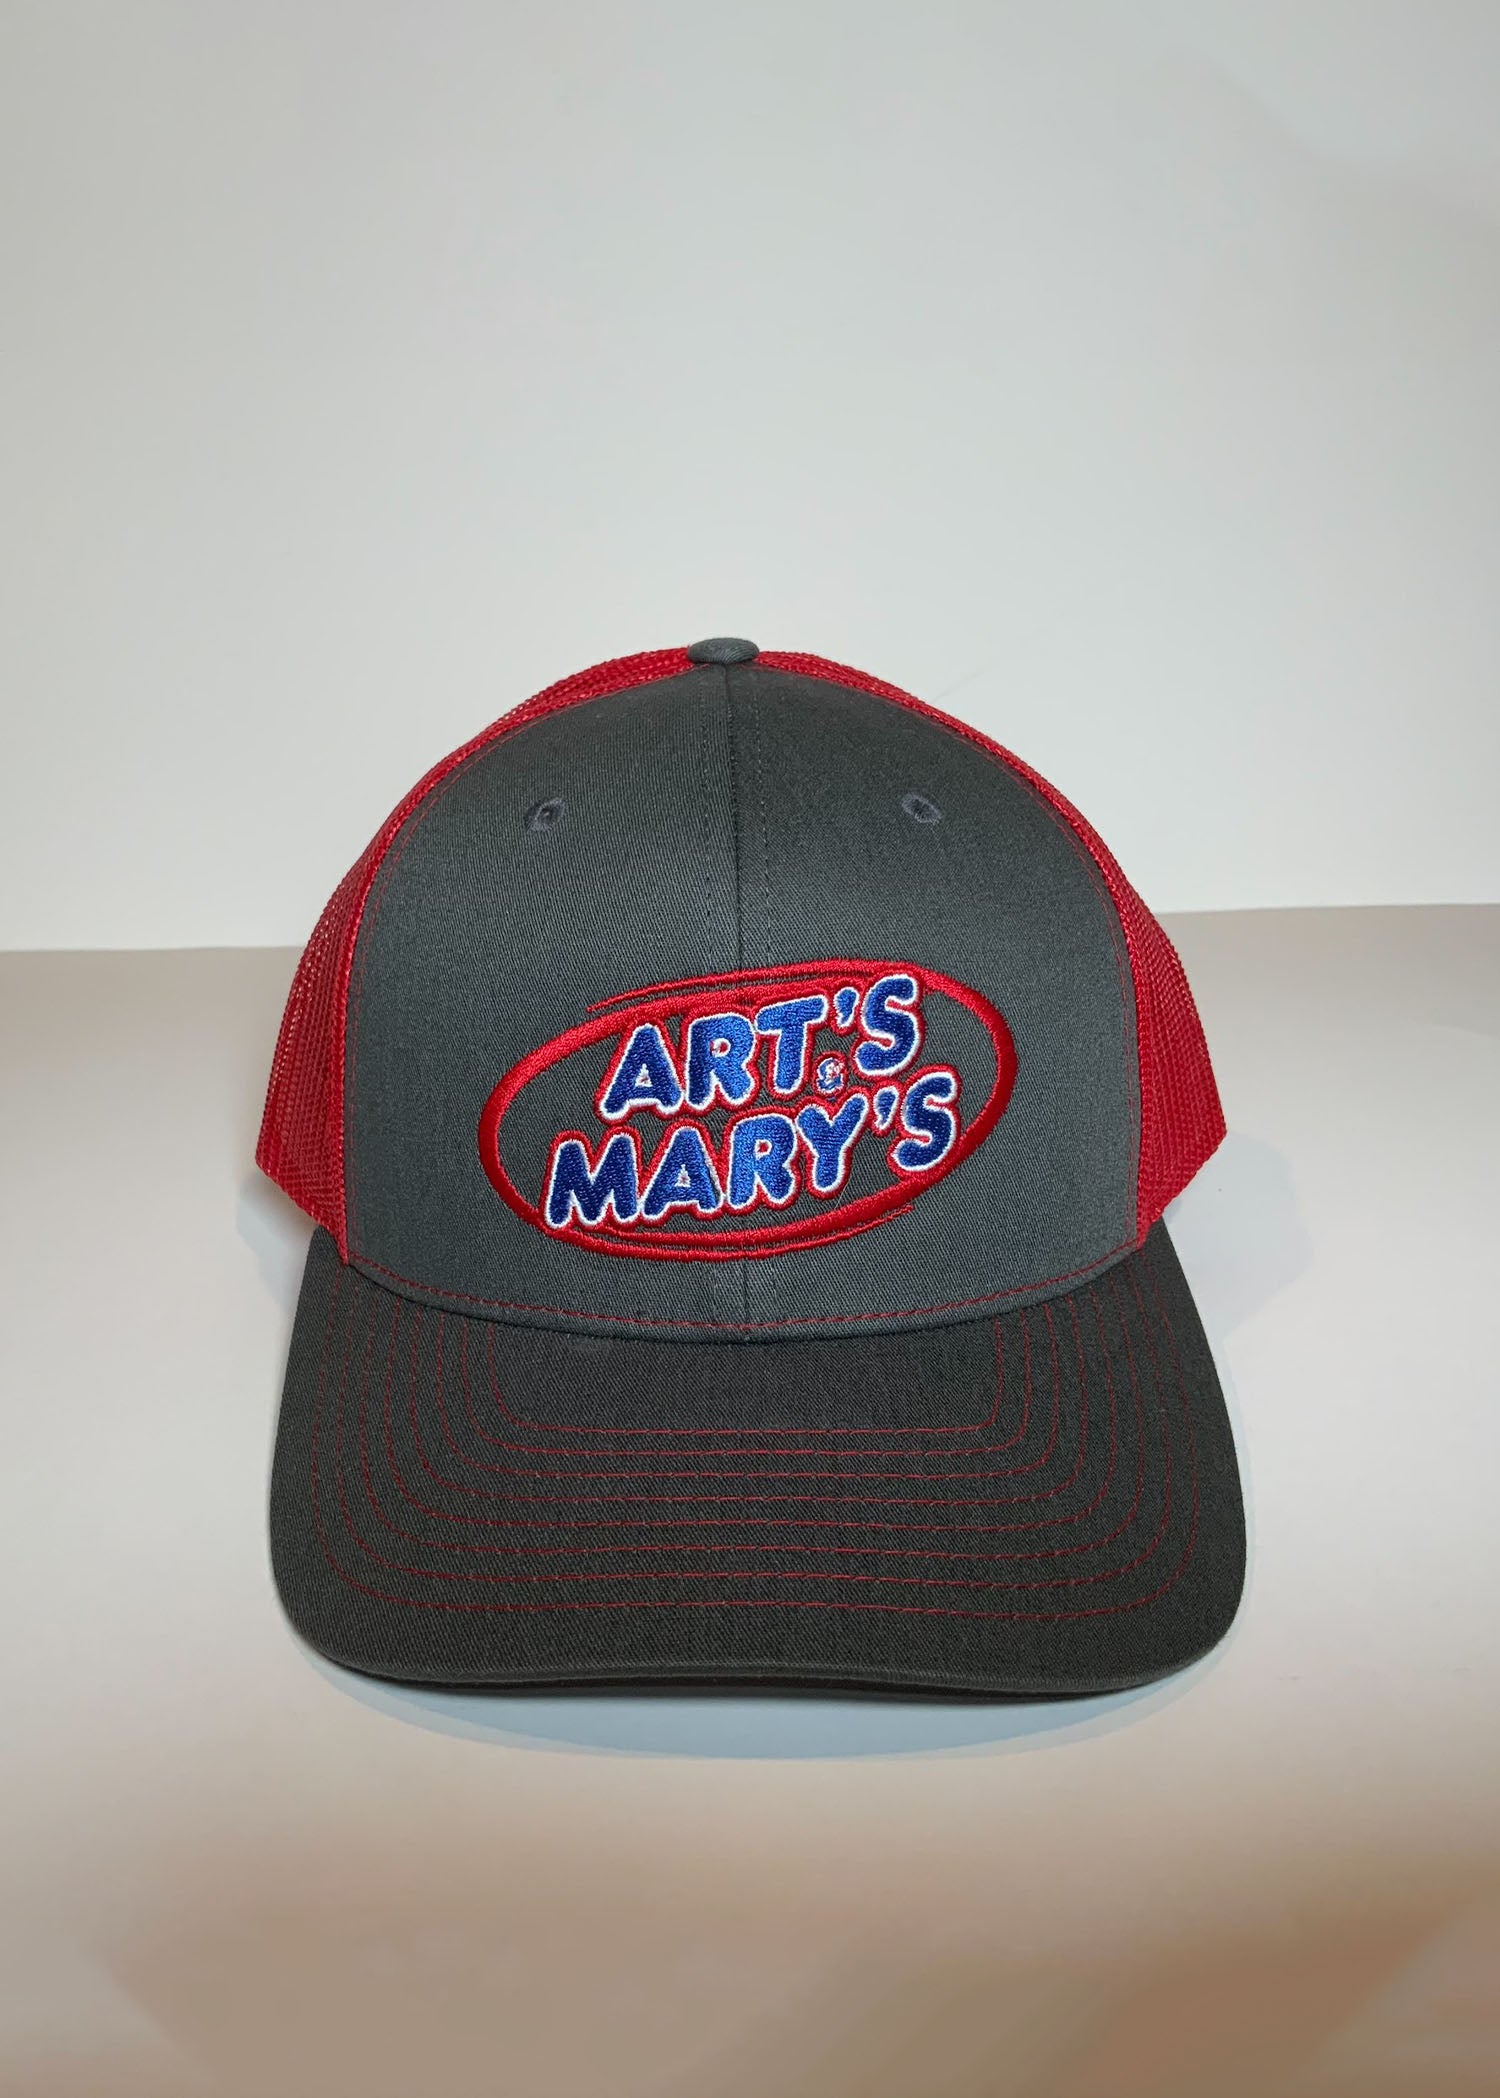 Art's & Mary's Hats